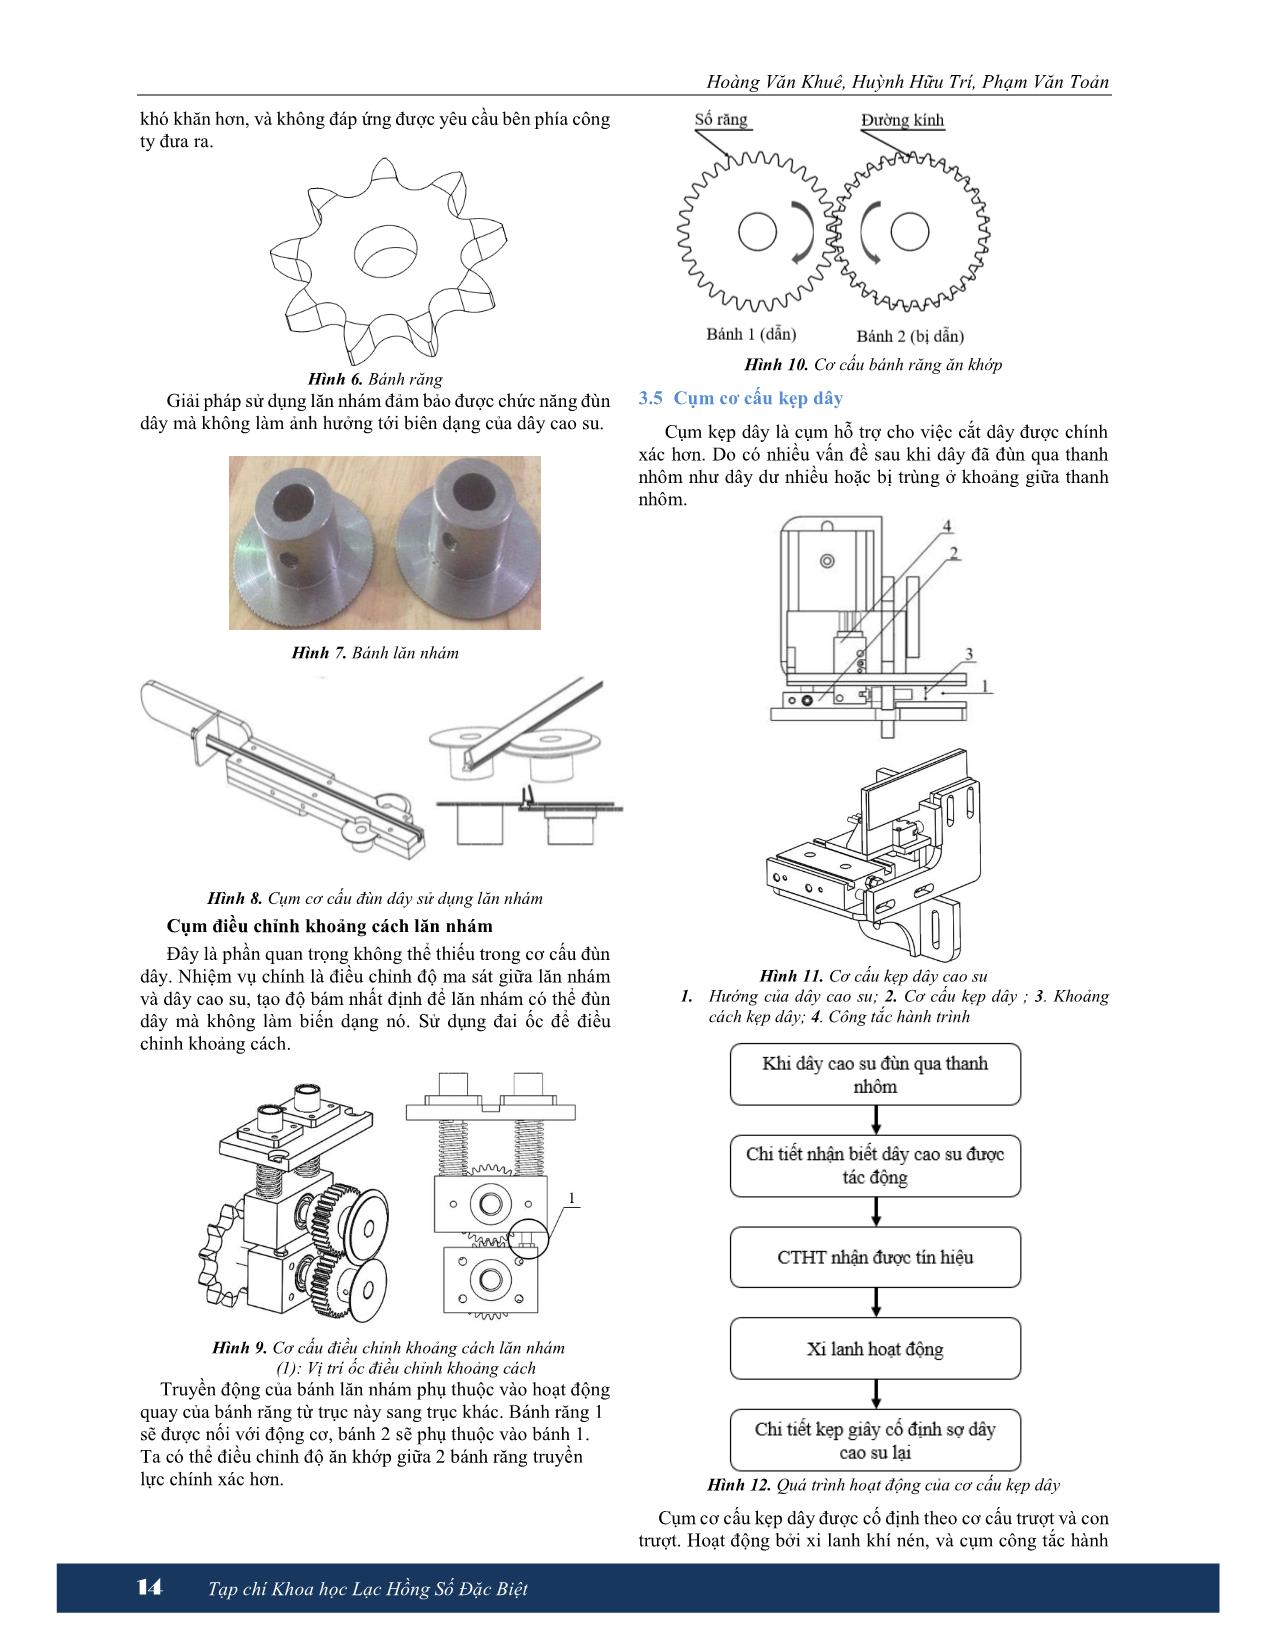 Thiết kế và chế tạo máy đùn dây bán tự động trang 3